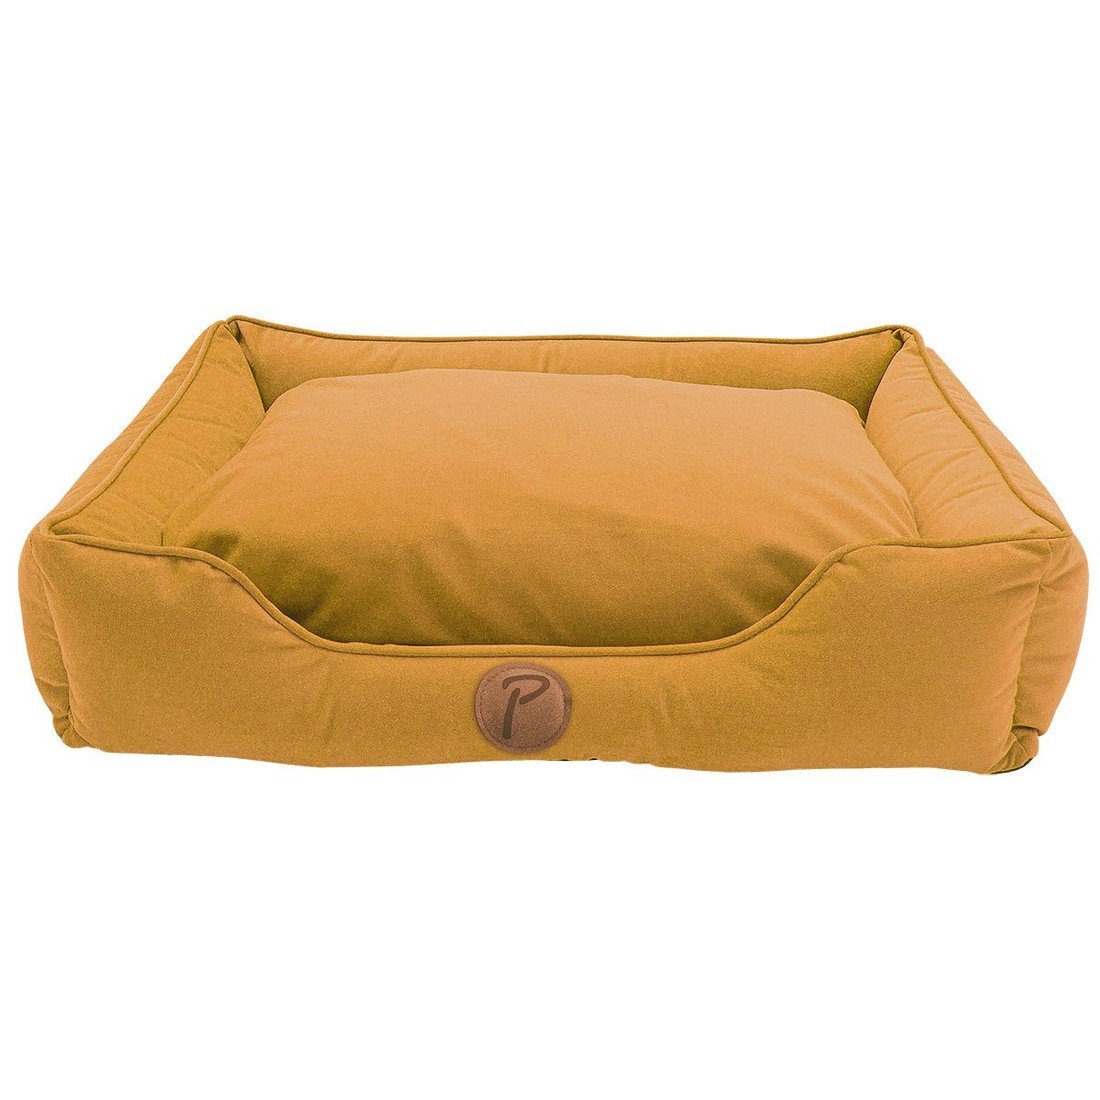 Petlando Paul pelíšek pro psy, hořčicově žlutý S 75 × 60 × 17 cm